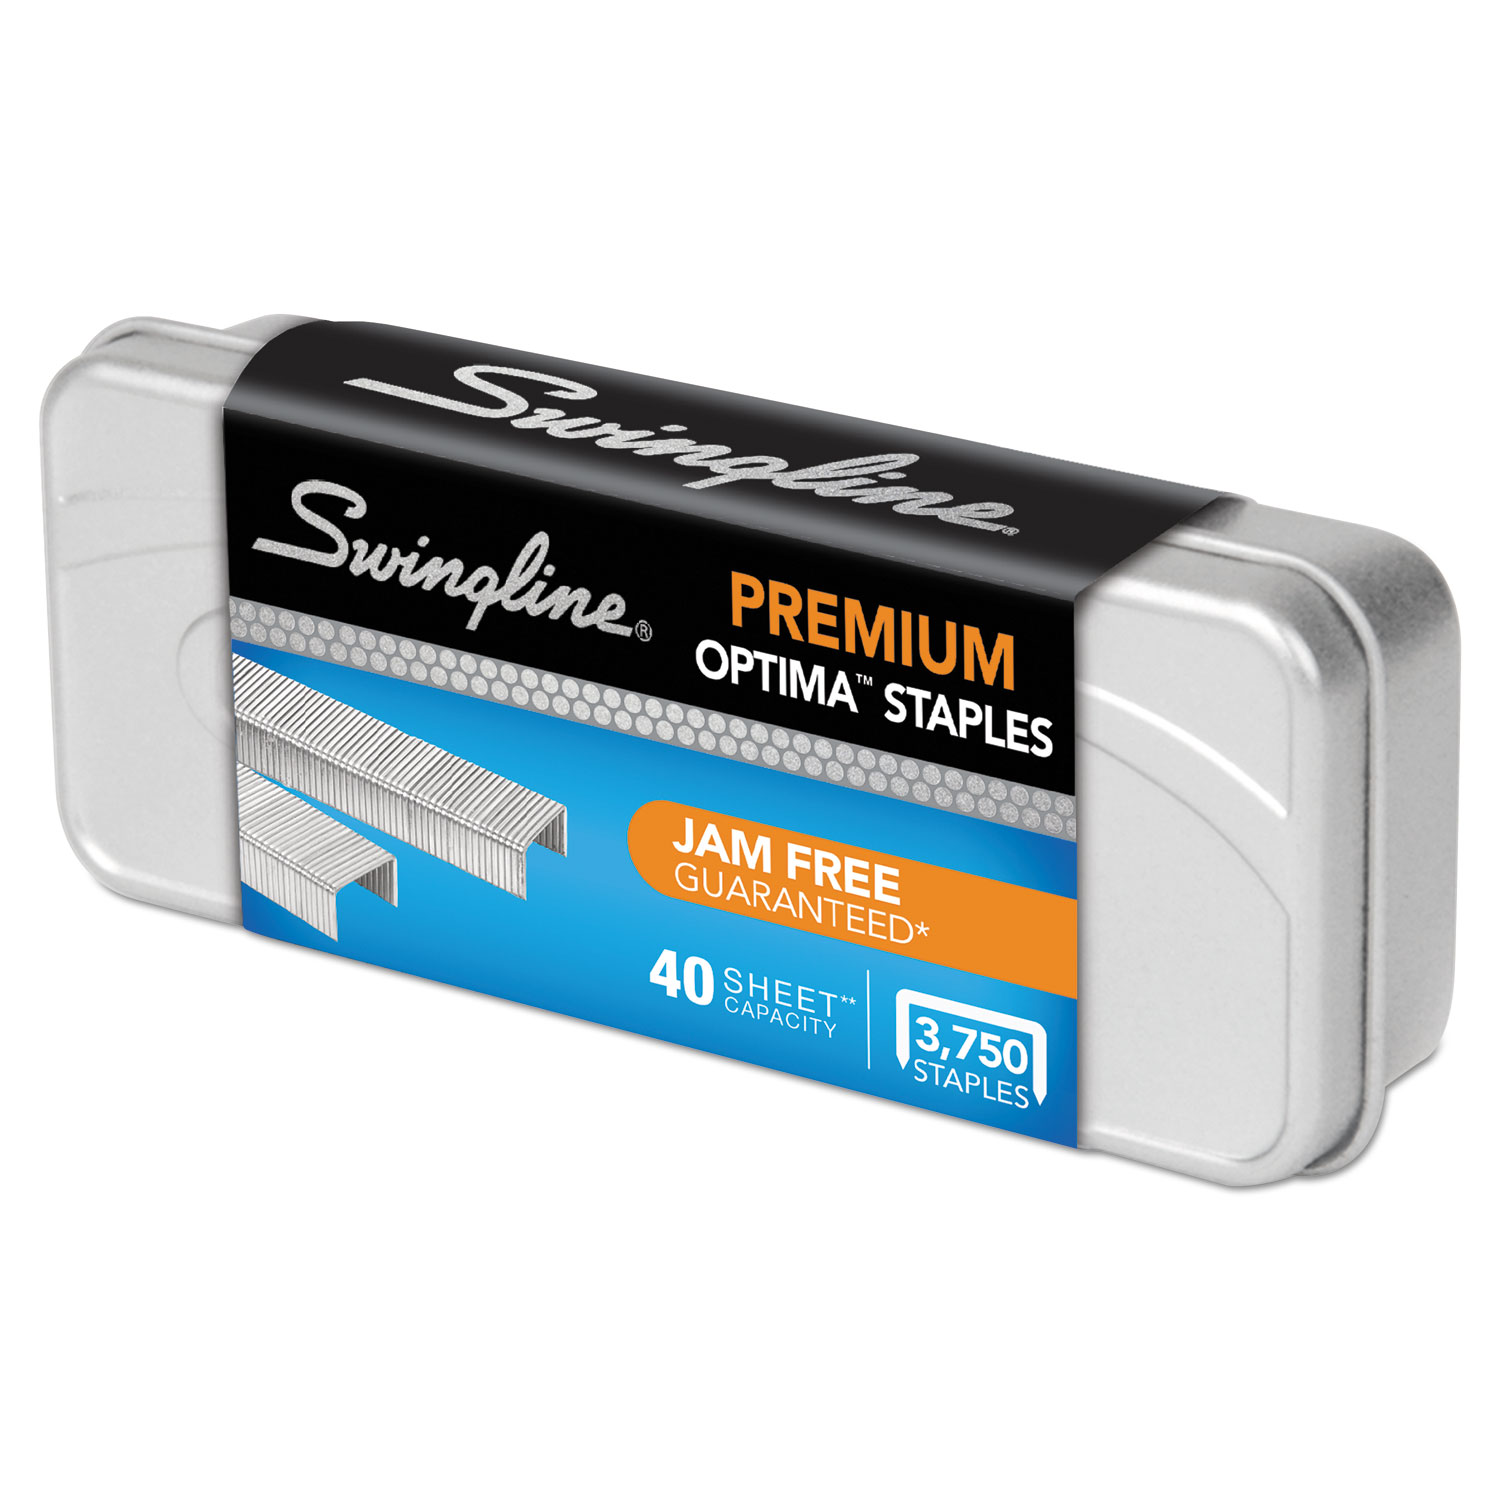 Optima Premium Staples, 40-Sheet Capacity, 3750/Box